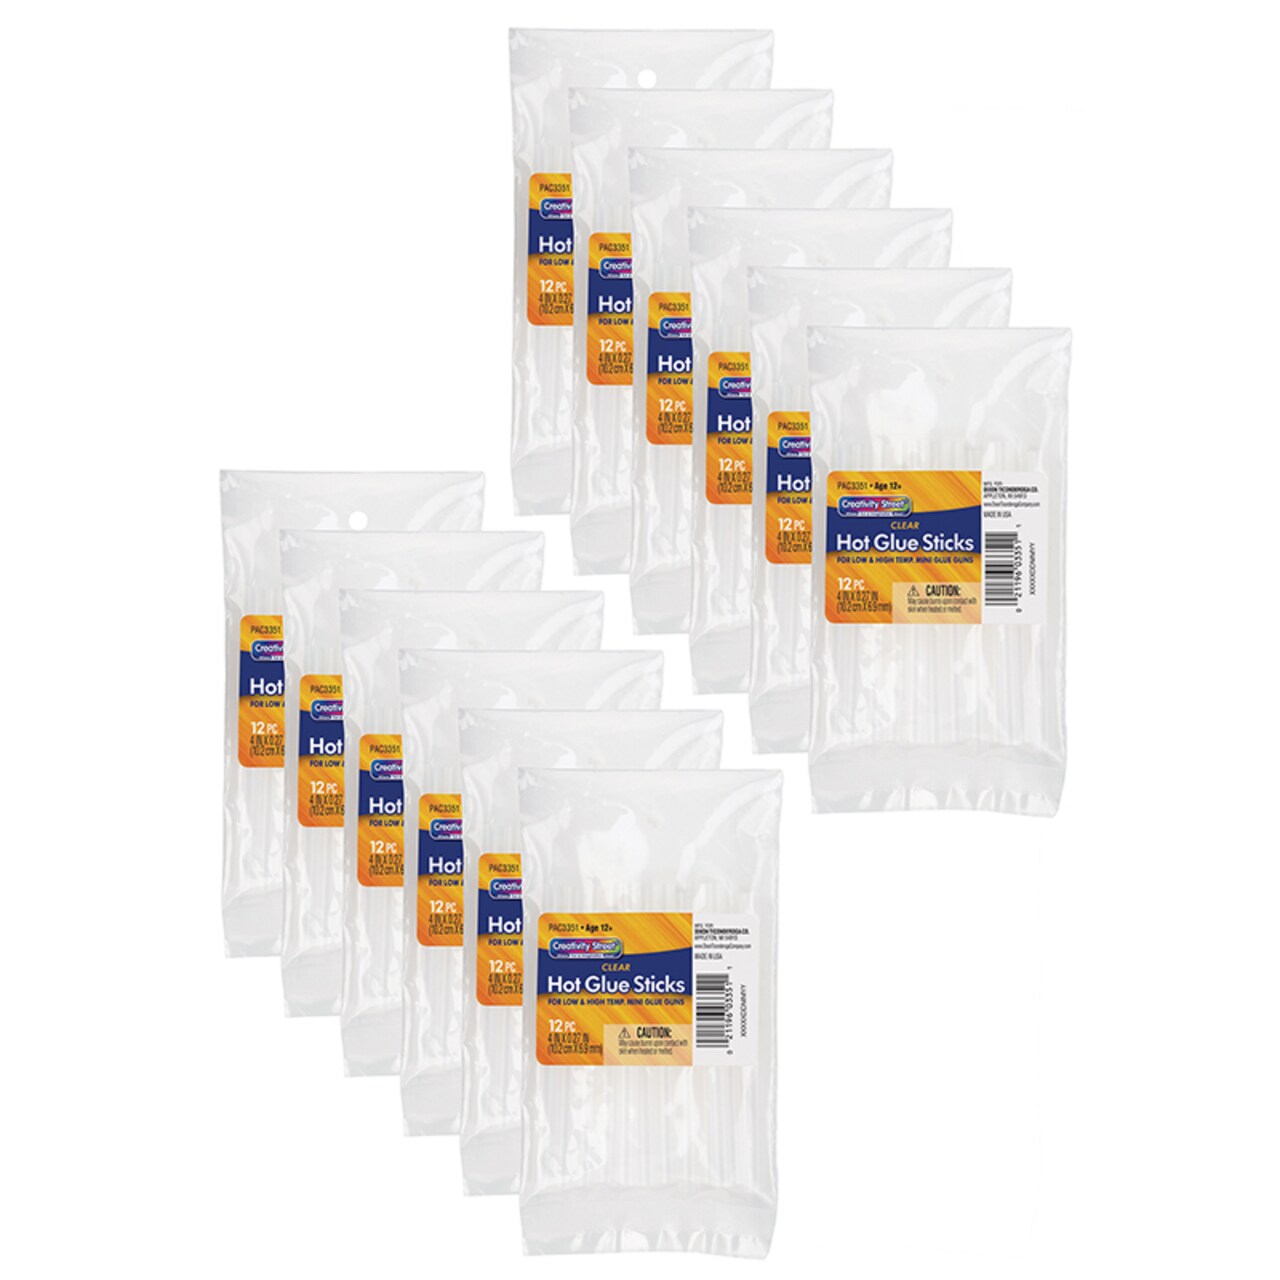 Hot Glue Sticks, Clear, 4 X 0.3125, 12 Per Pack, 12 Packs